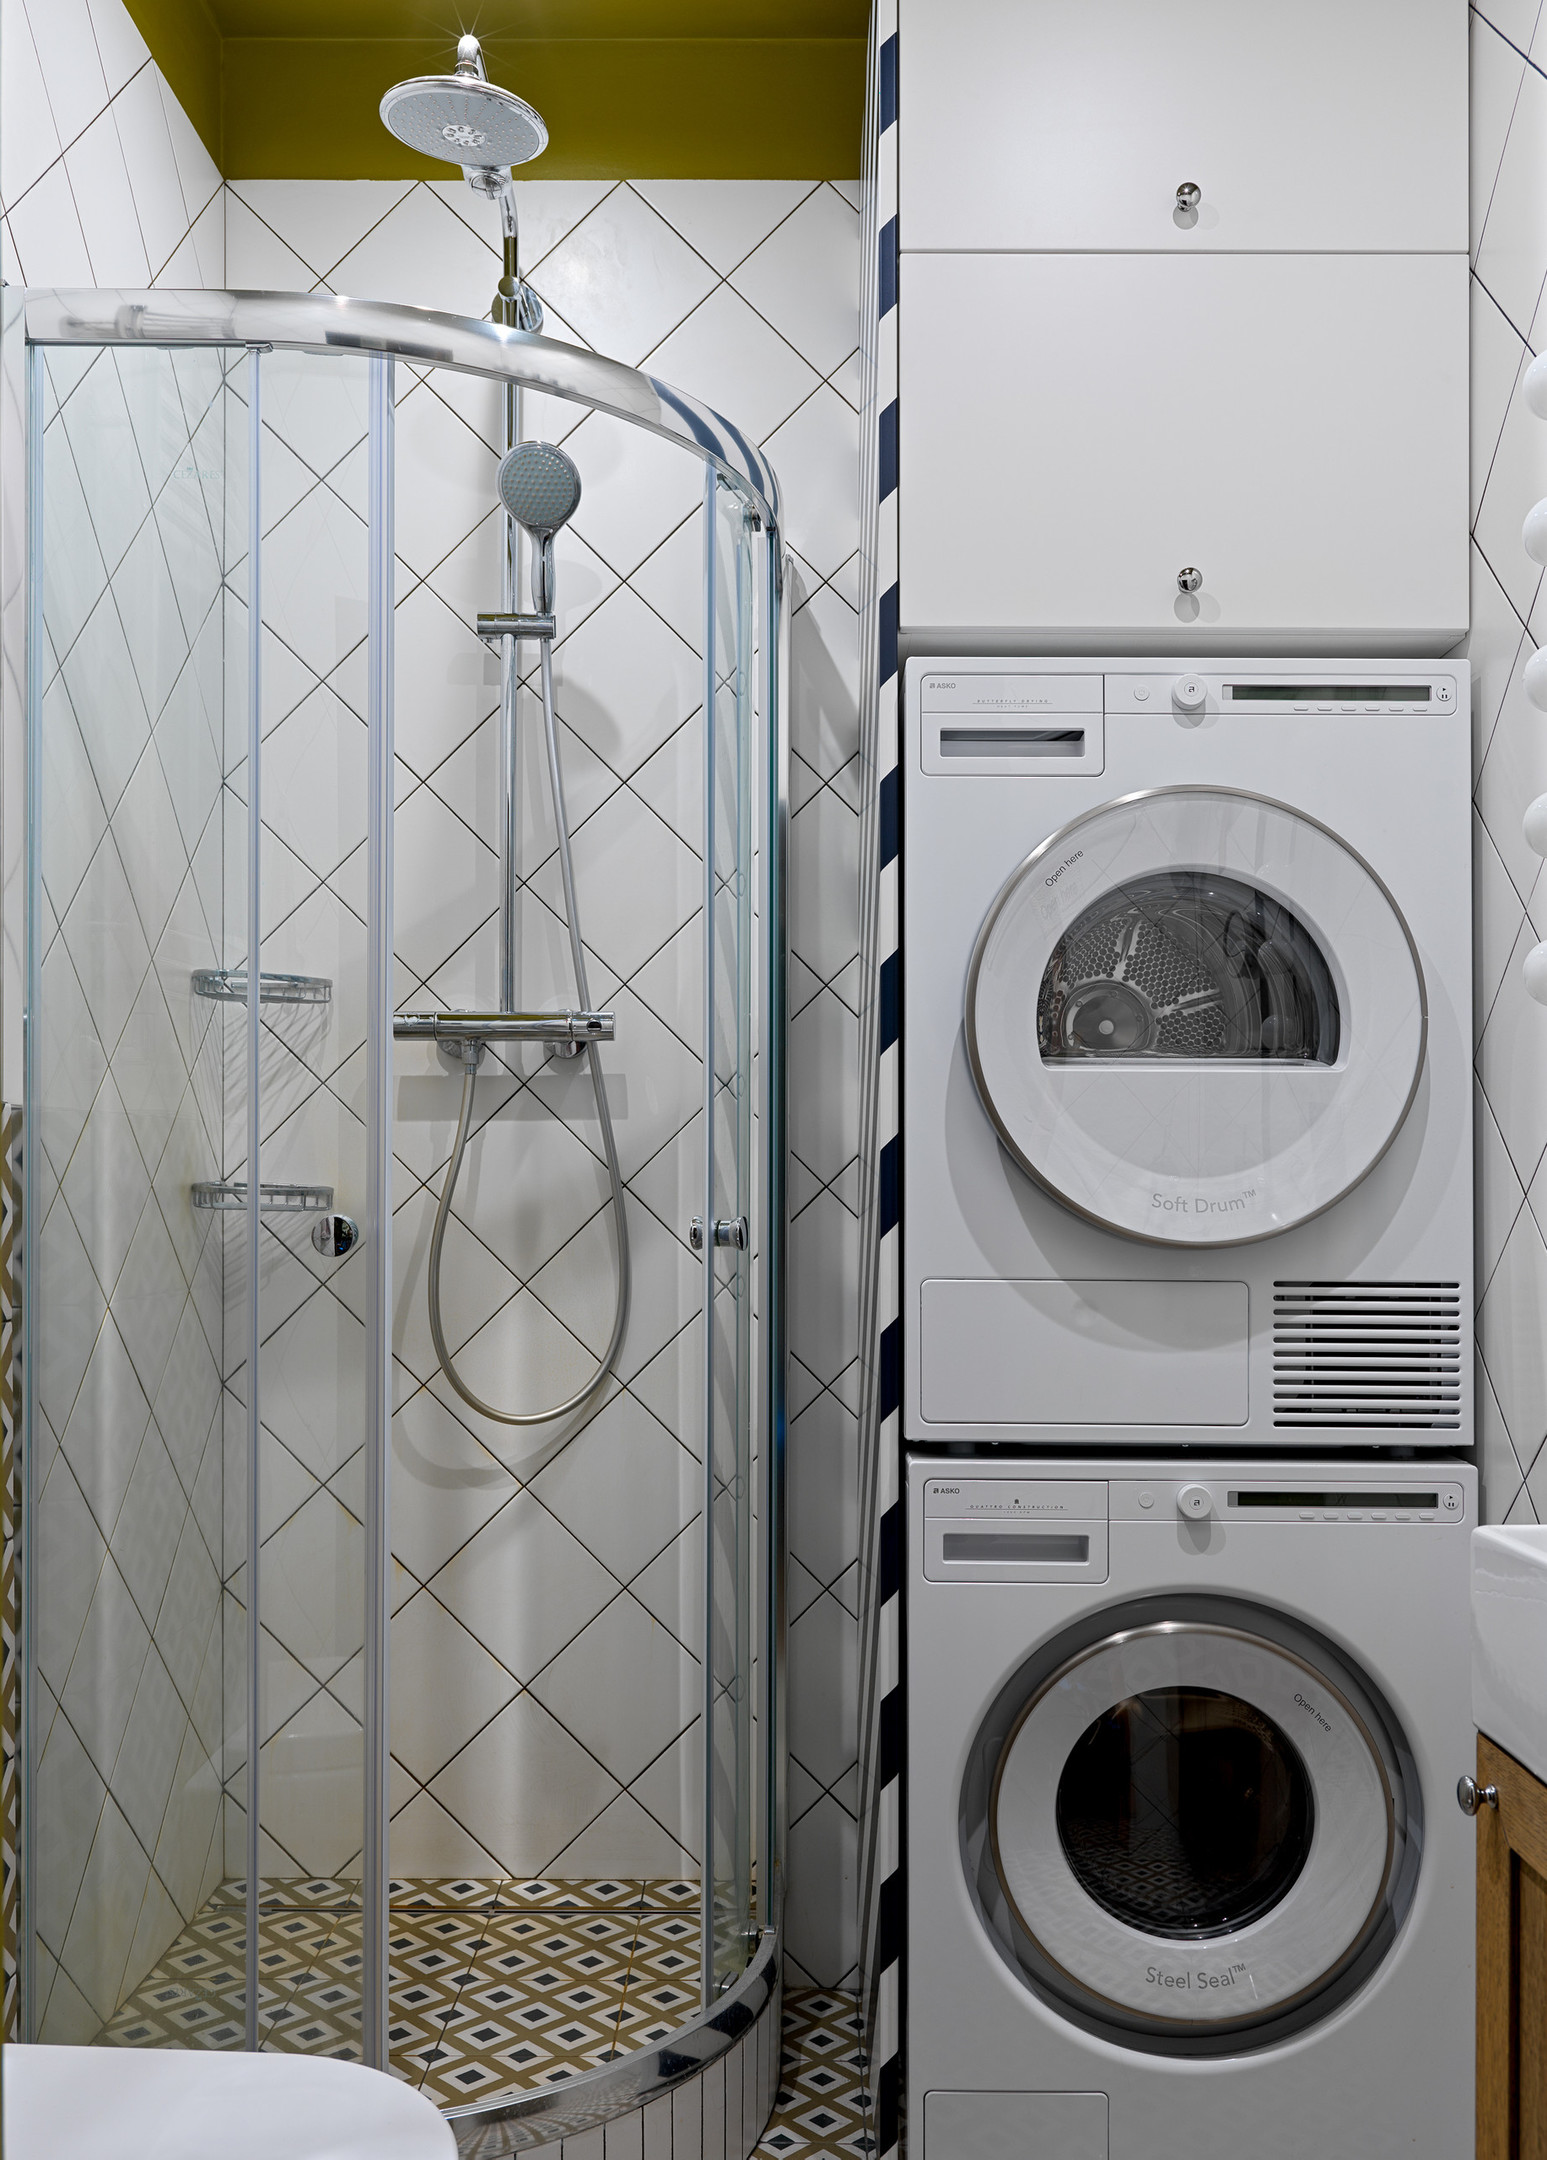 Vì diện tích phòng tắm không quá rộng rãi nên các thiết bị như máy giặt, máy sấy được xếp chồng lên nhau, phía trên cùng là tủ lưu trữ. Buồng tắm thiết kế trong góc nhỏ, phân vùng bởi cửa kính trượt trong suốt theo đường cong mềm mại.